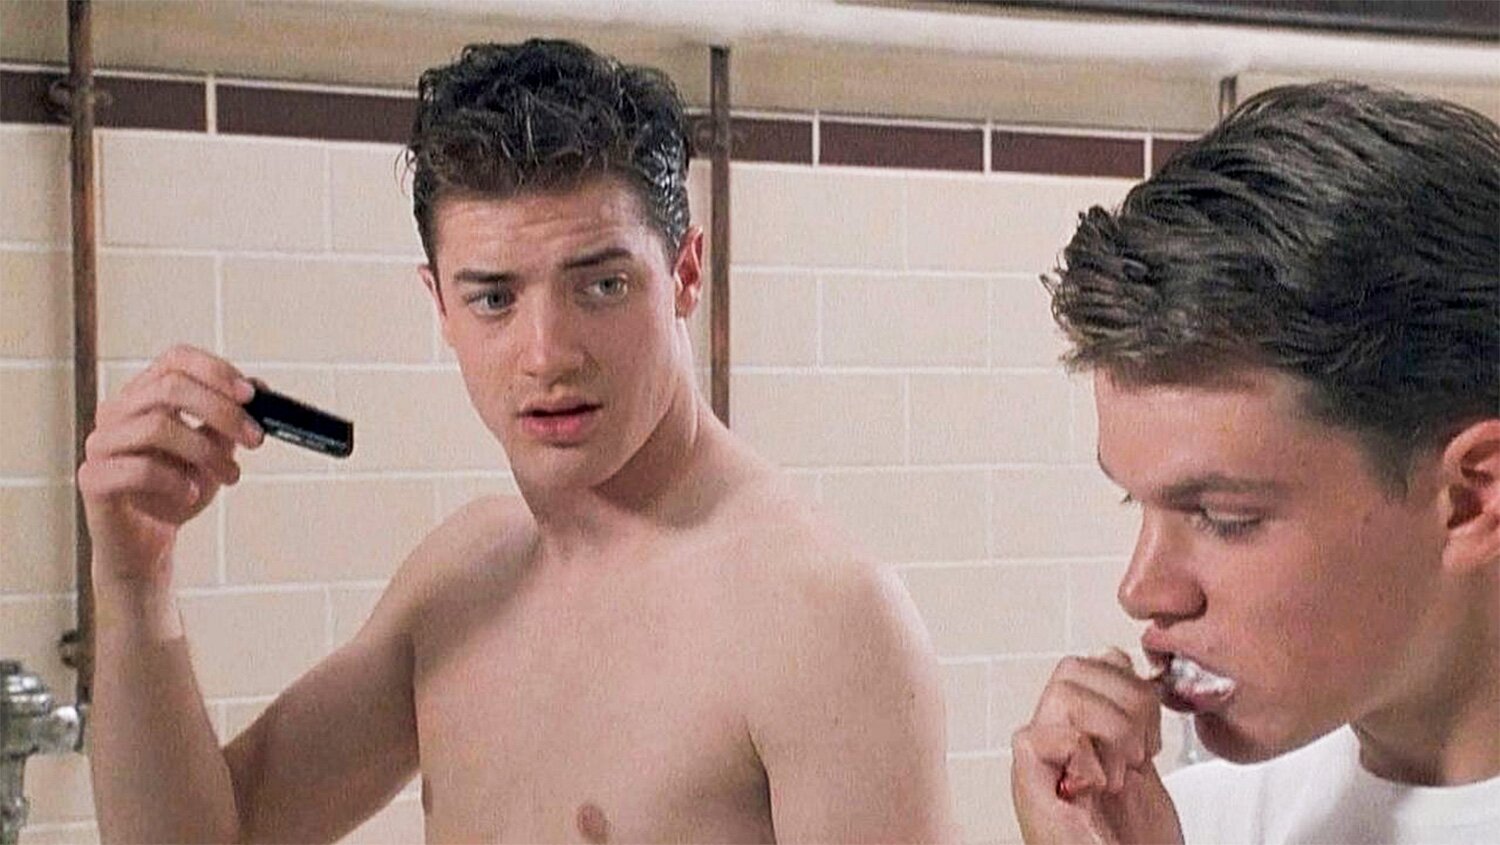 Scuola d'onore, Brendan Fraser ricorda la scena nella doccia: "Io e Matt Damon eravamo davvero nudi"